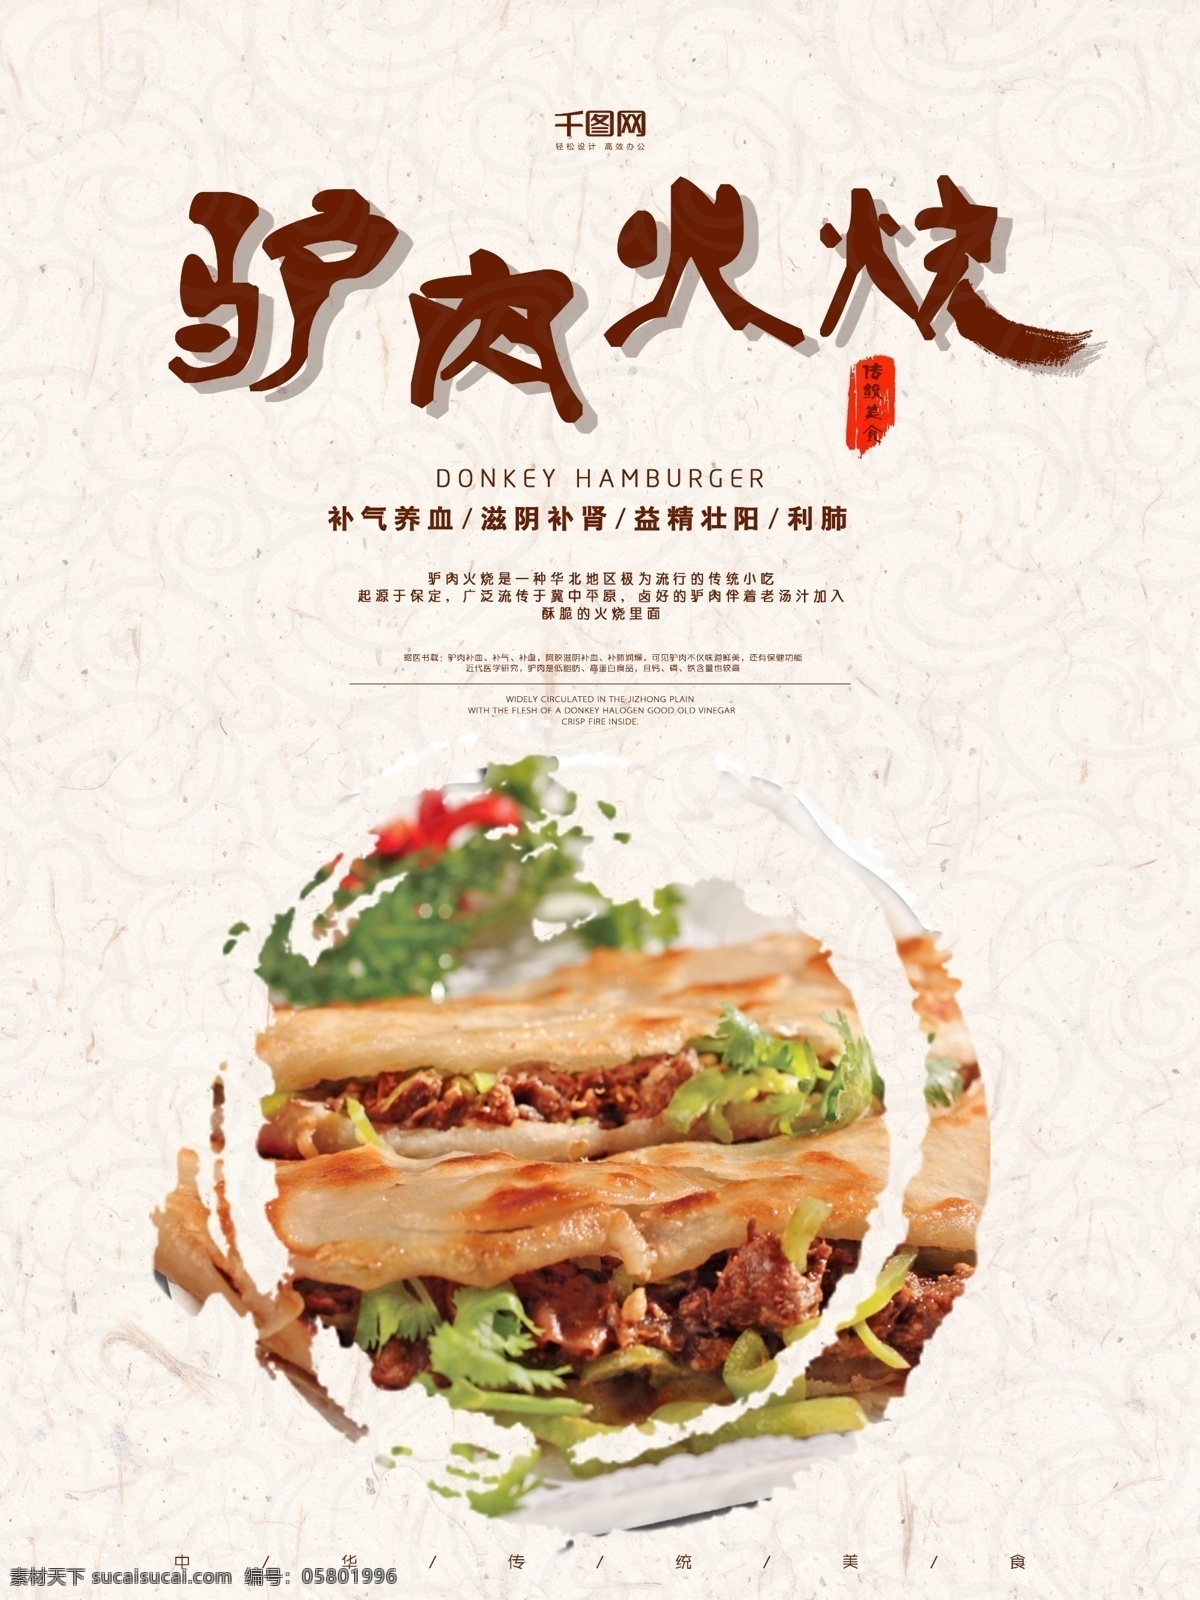 中国 传统 美食 驴肉 火烧 中国传统 传统美食 美味 驴肉火烧 海报 美食文化 中国风 味道 饭馆 饭店 餐厅